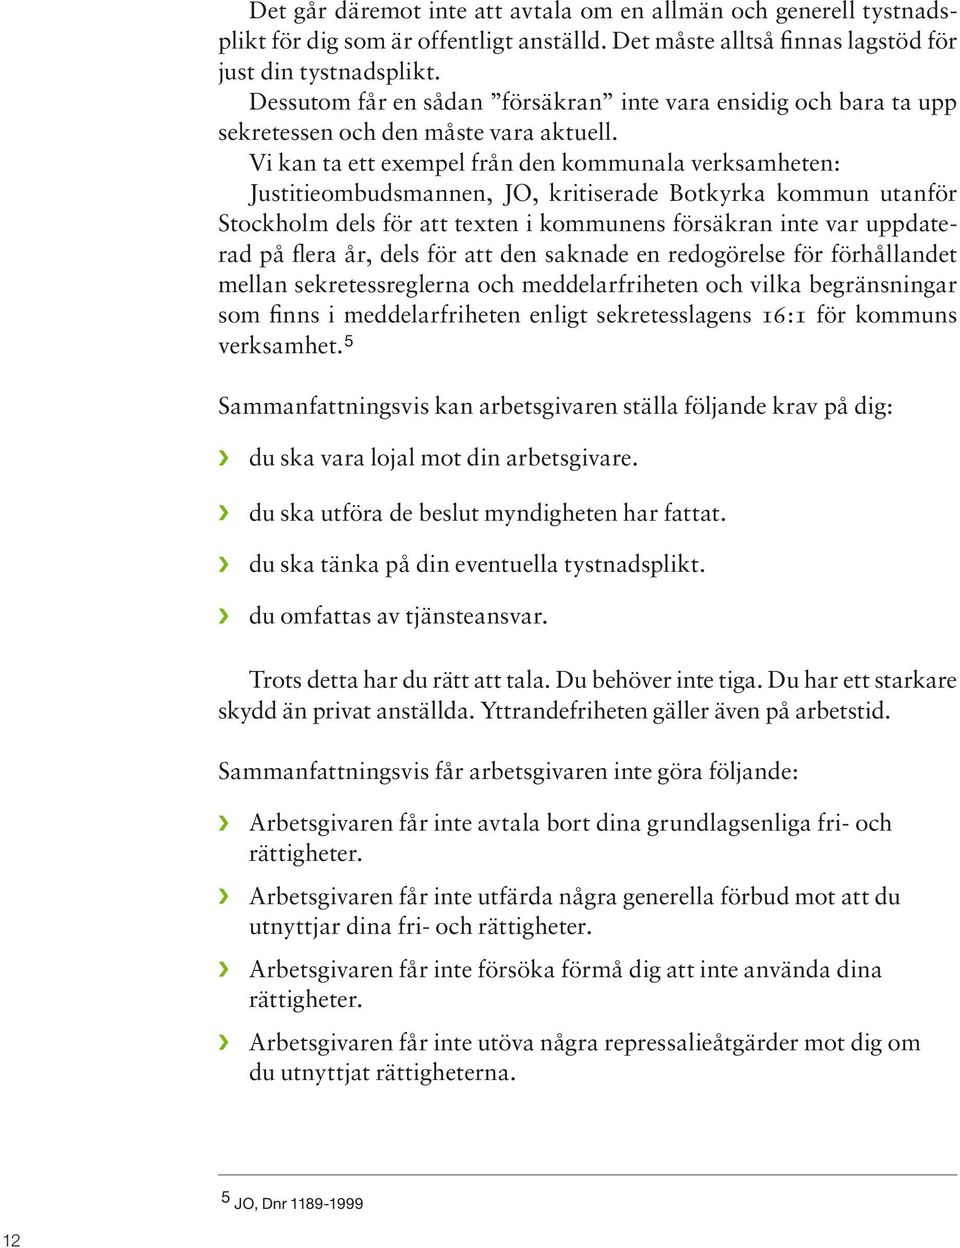 Vi kan ta ett exempel från den kommunala verksamheten: Justitieombudsmannen, JO, kritiserade Botkyrka kommun utanför Stockholm dels för att texten i kommunens försäkran inte var uppdaterad på flera